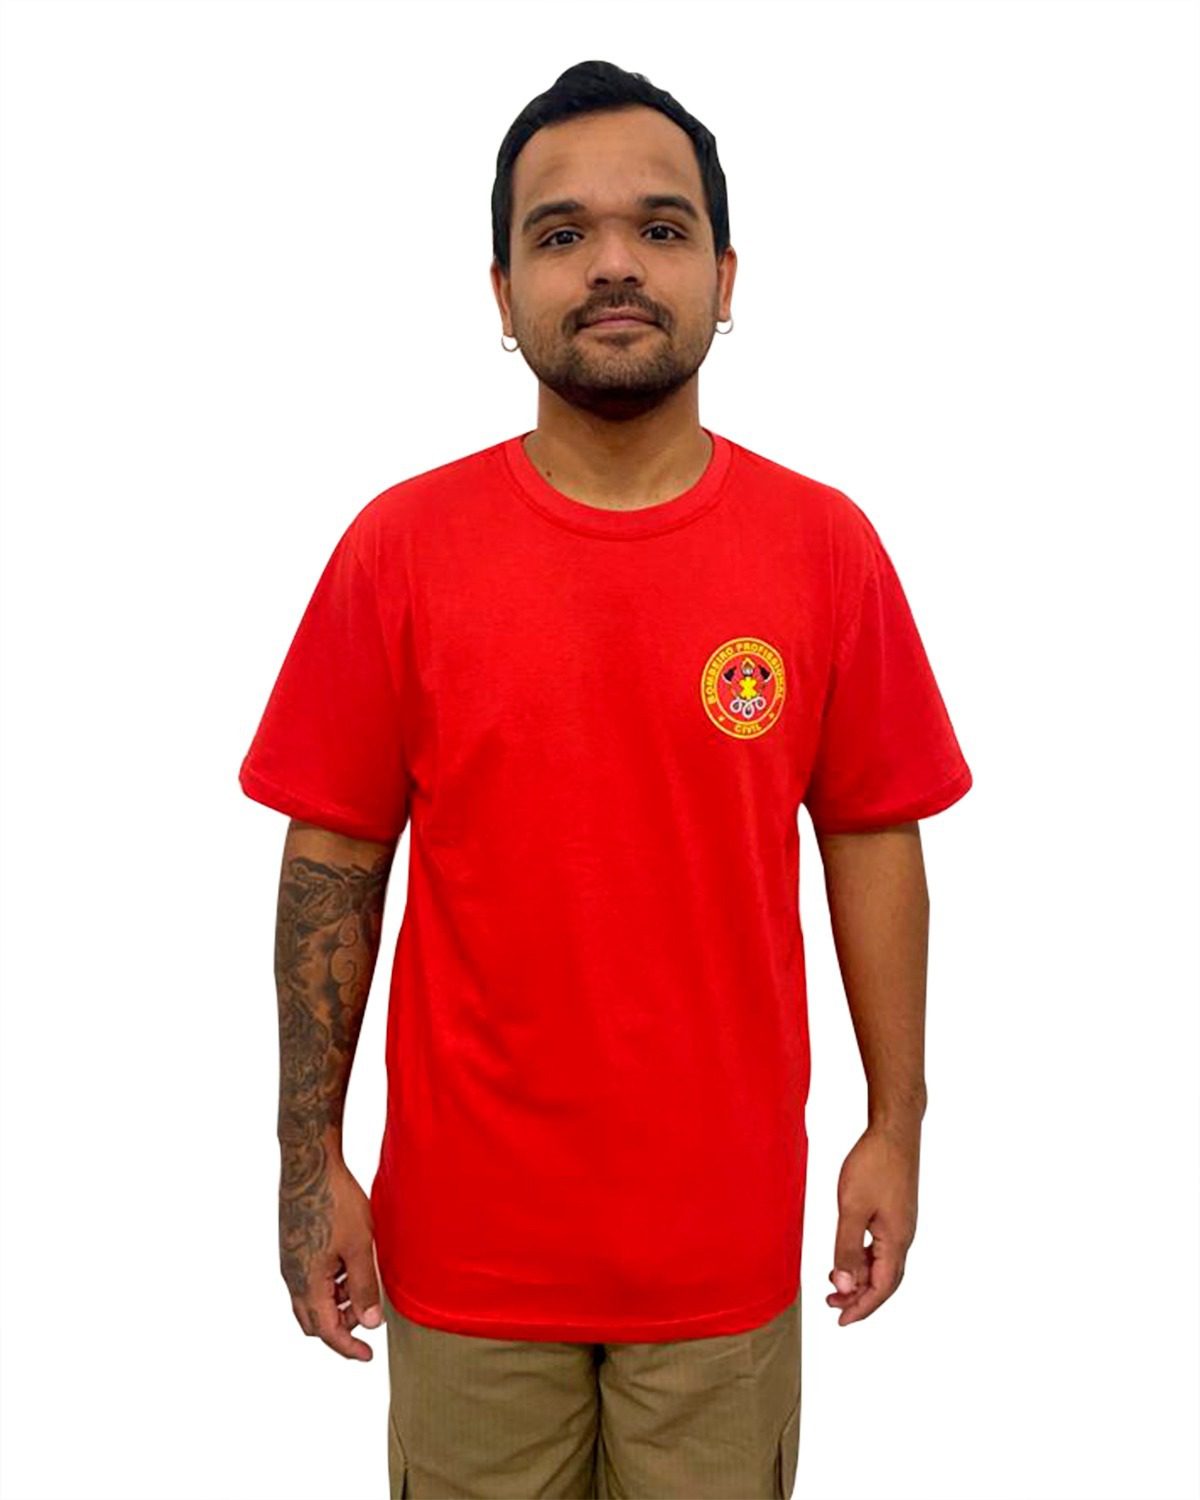 Preço da Camiseta Promocional Estampada Saúde - Camiseta